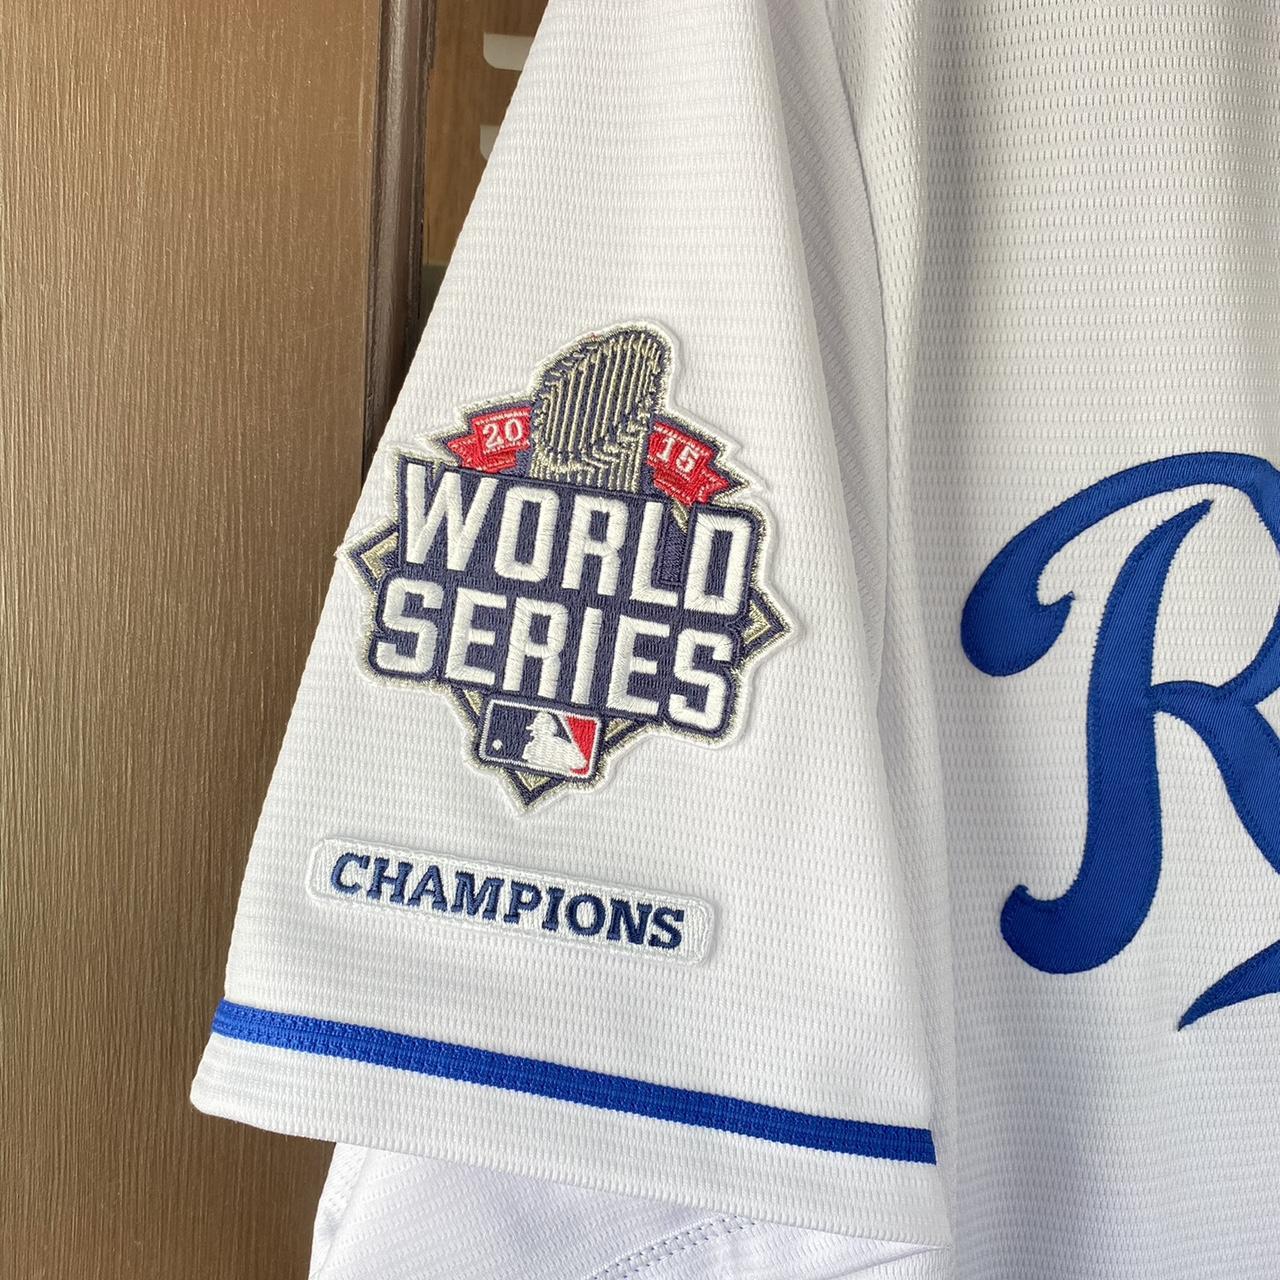 Kc Royals Jersey 2015 World Series - Depop